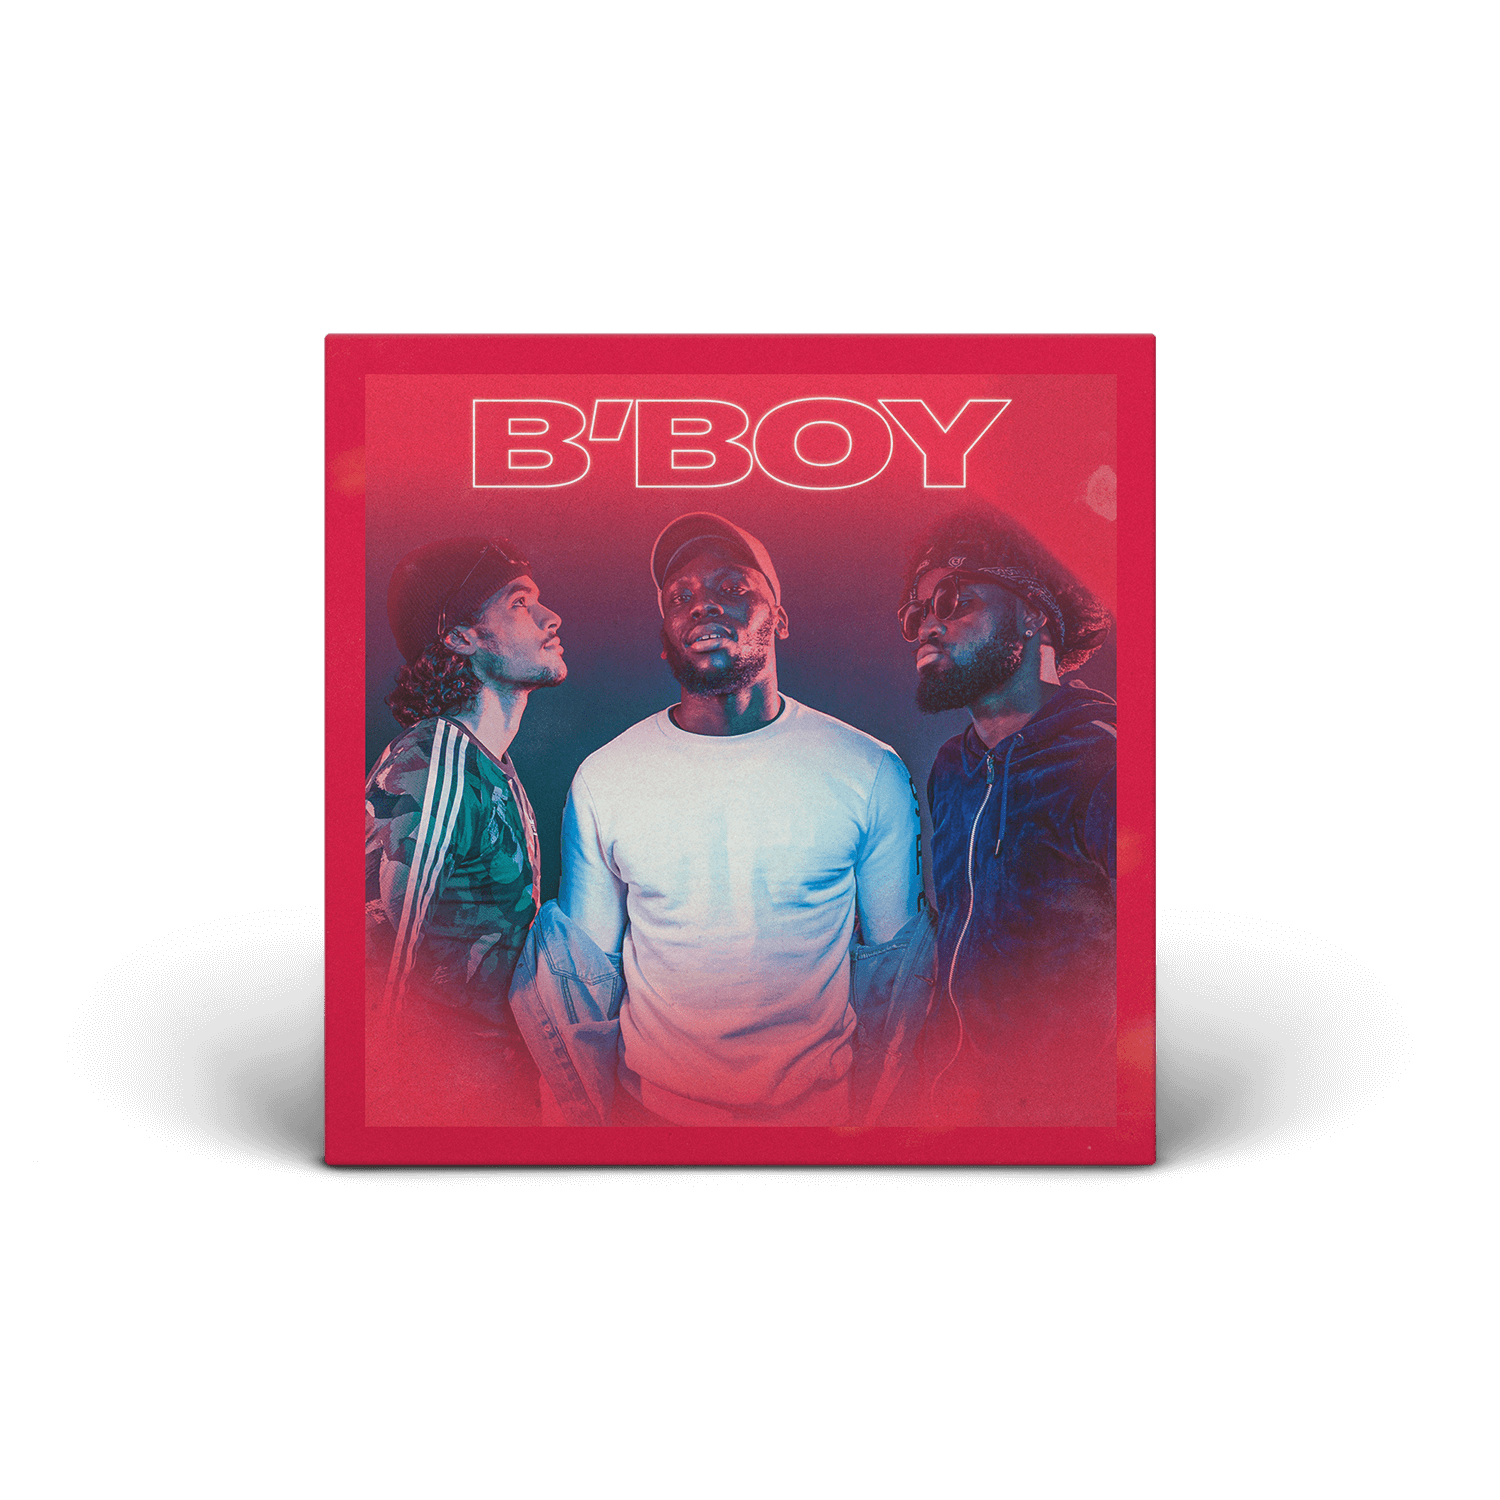 B'BOY - B'BOY - Digital